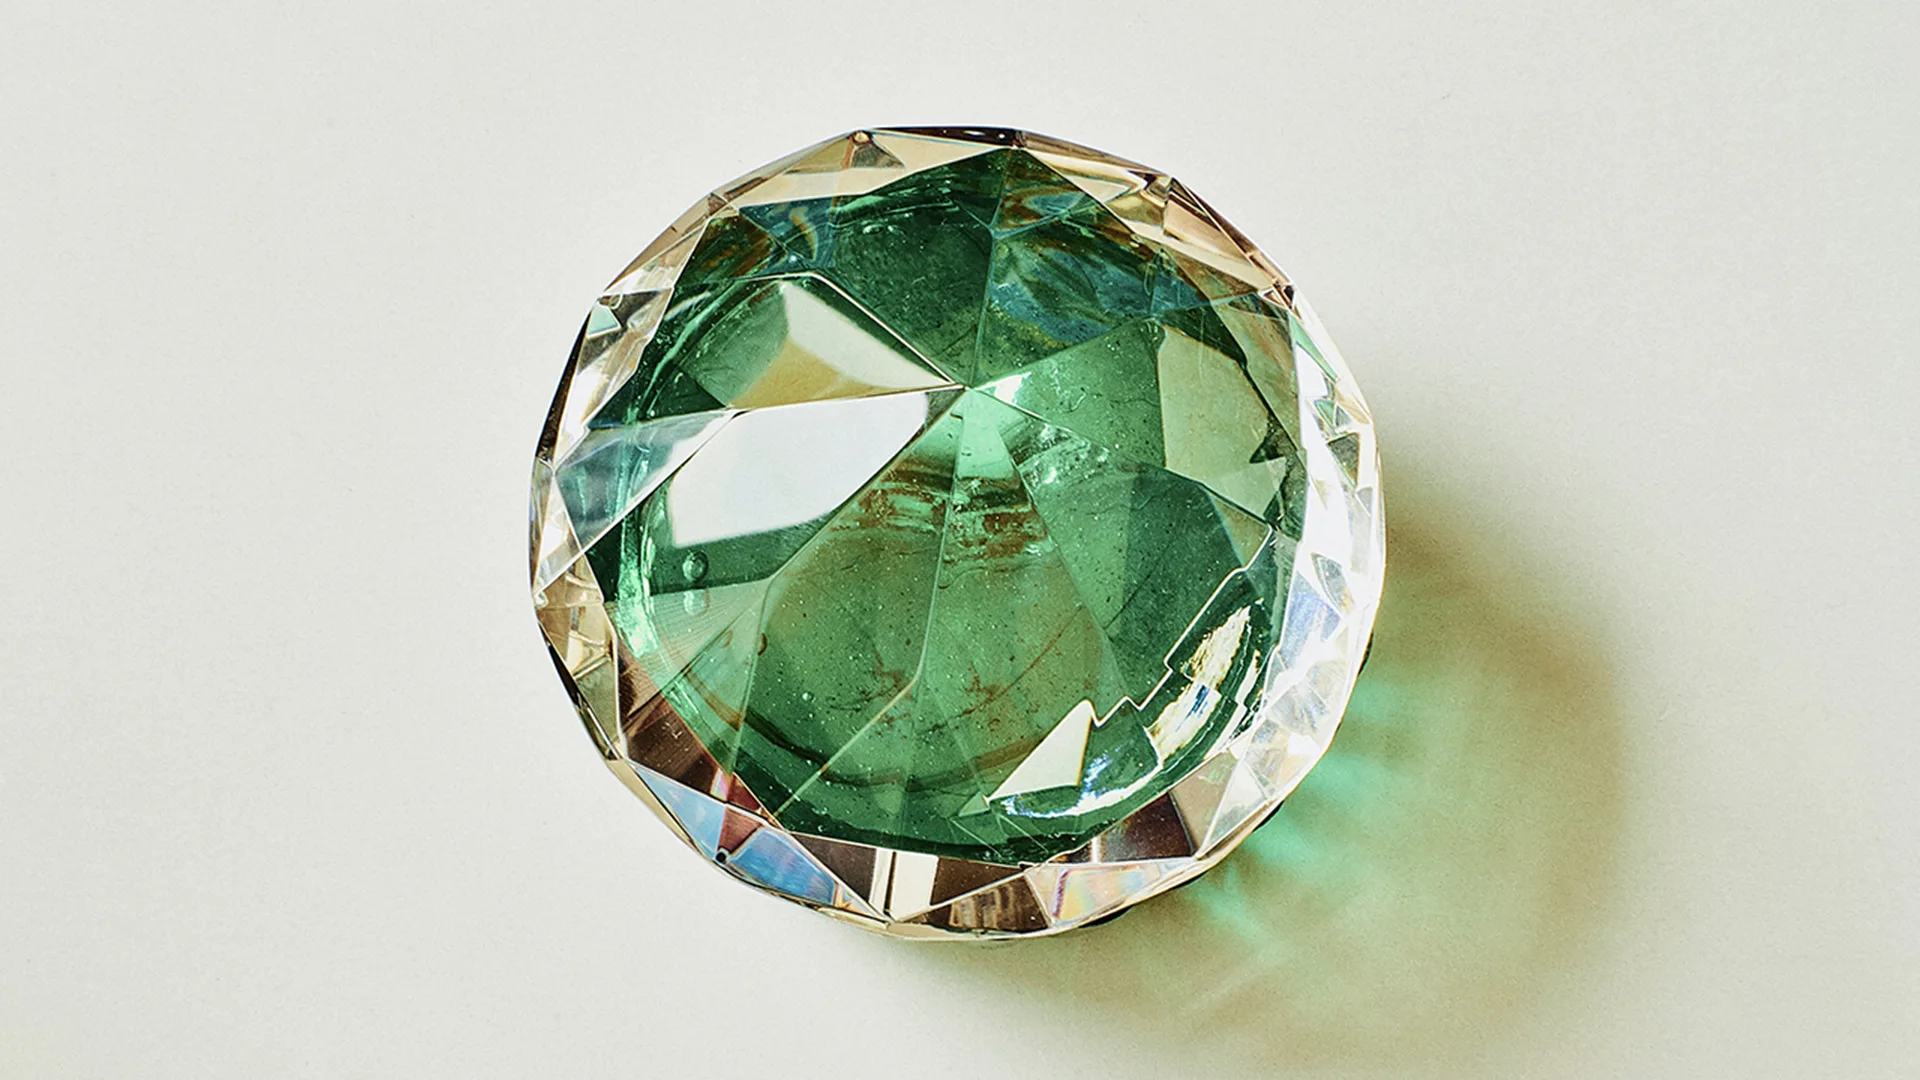 A green gem